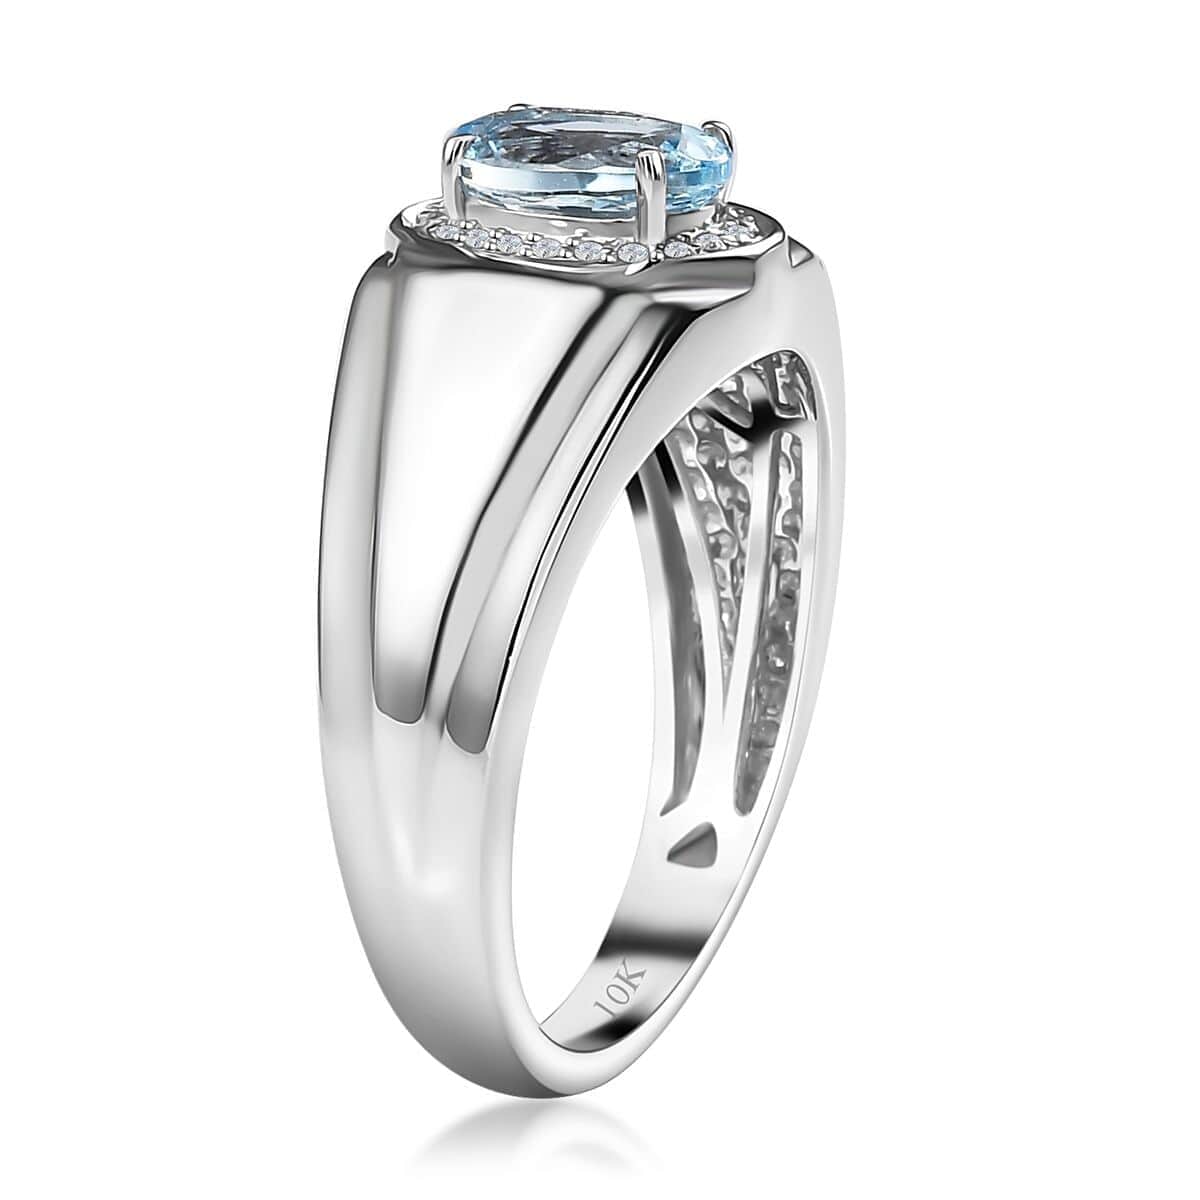 Luxoro 10K White Gold Premium Santa Maria Aquamarine and G-H I2 Diamond Men's Ring (Size 9.0) 6.15 Grams 1.20 ctw image number 3